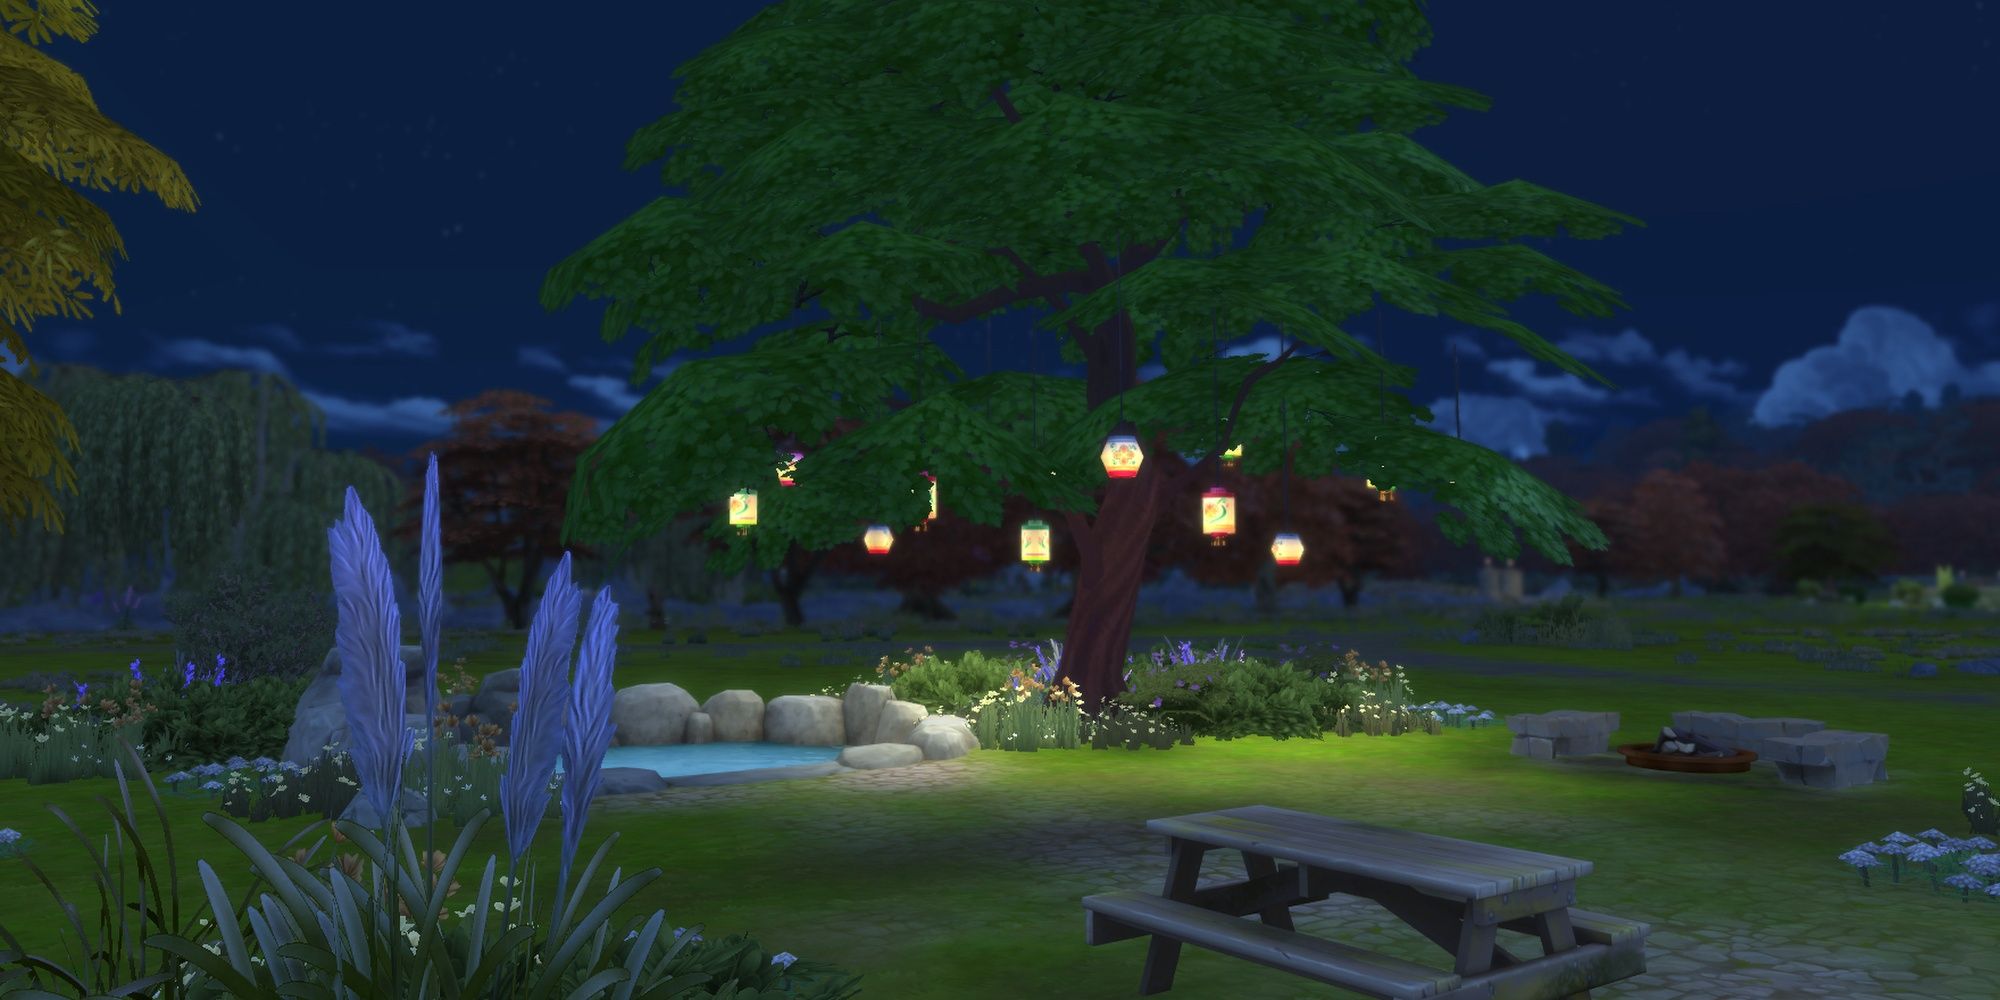 Тихая площадка для пикника в Sims 4 с большим дубом, на котором ночью висит множество бумажных фонариков.